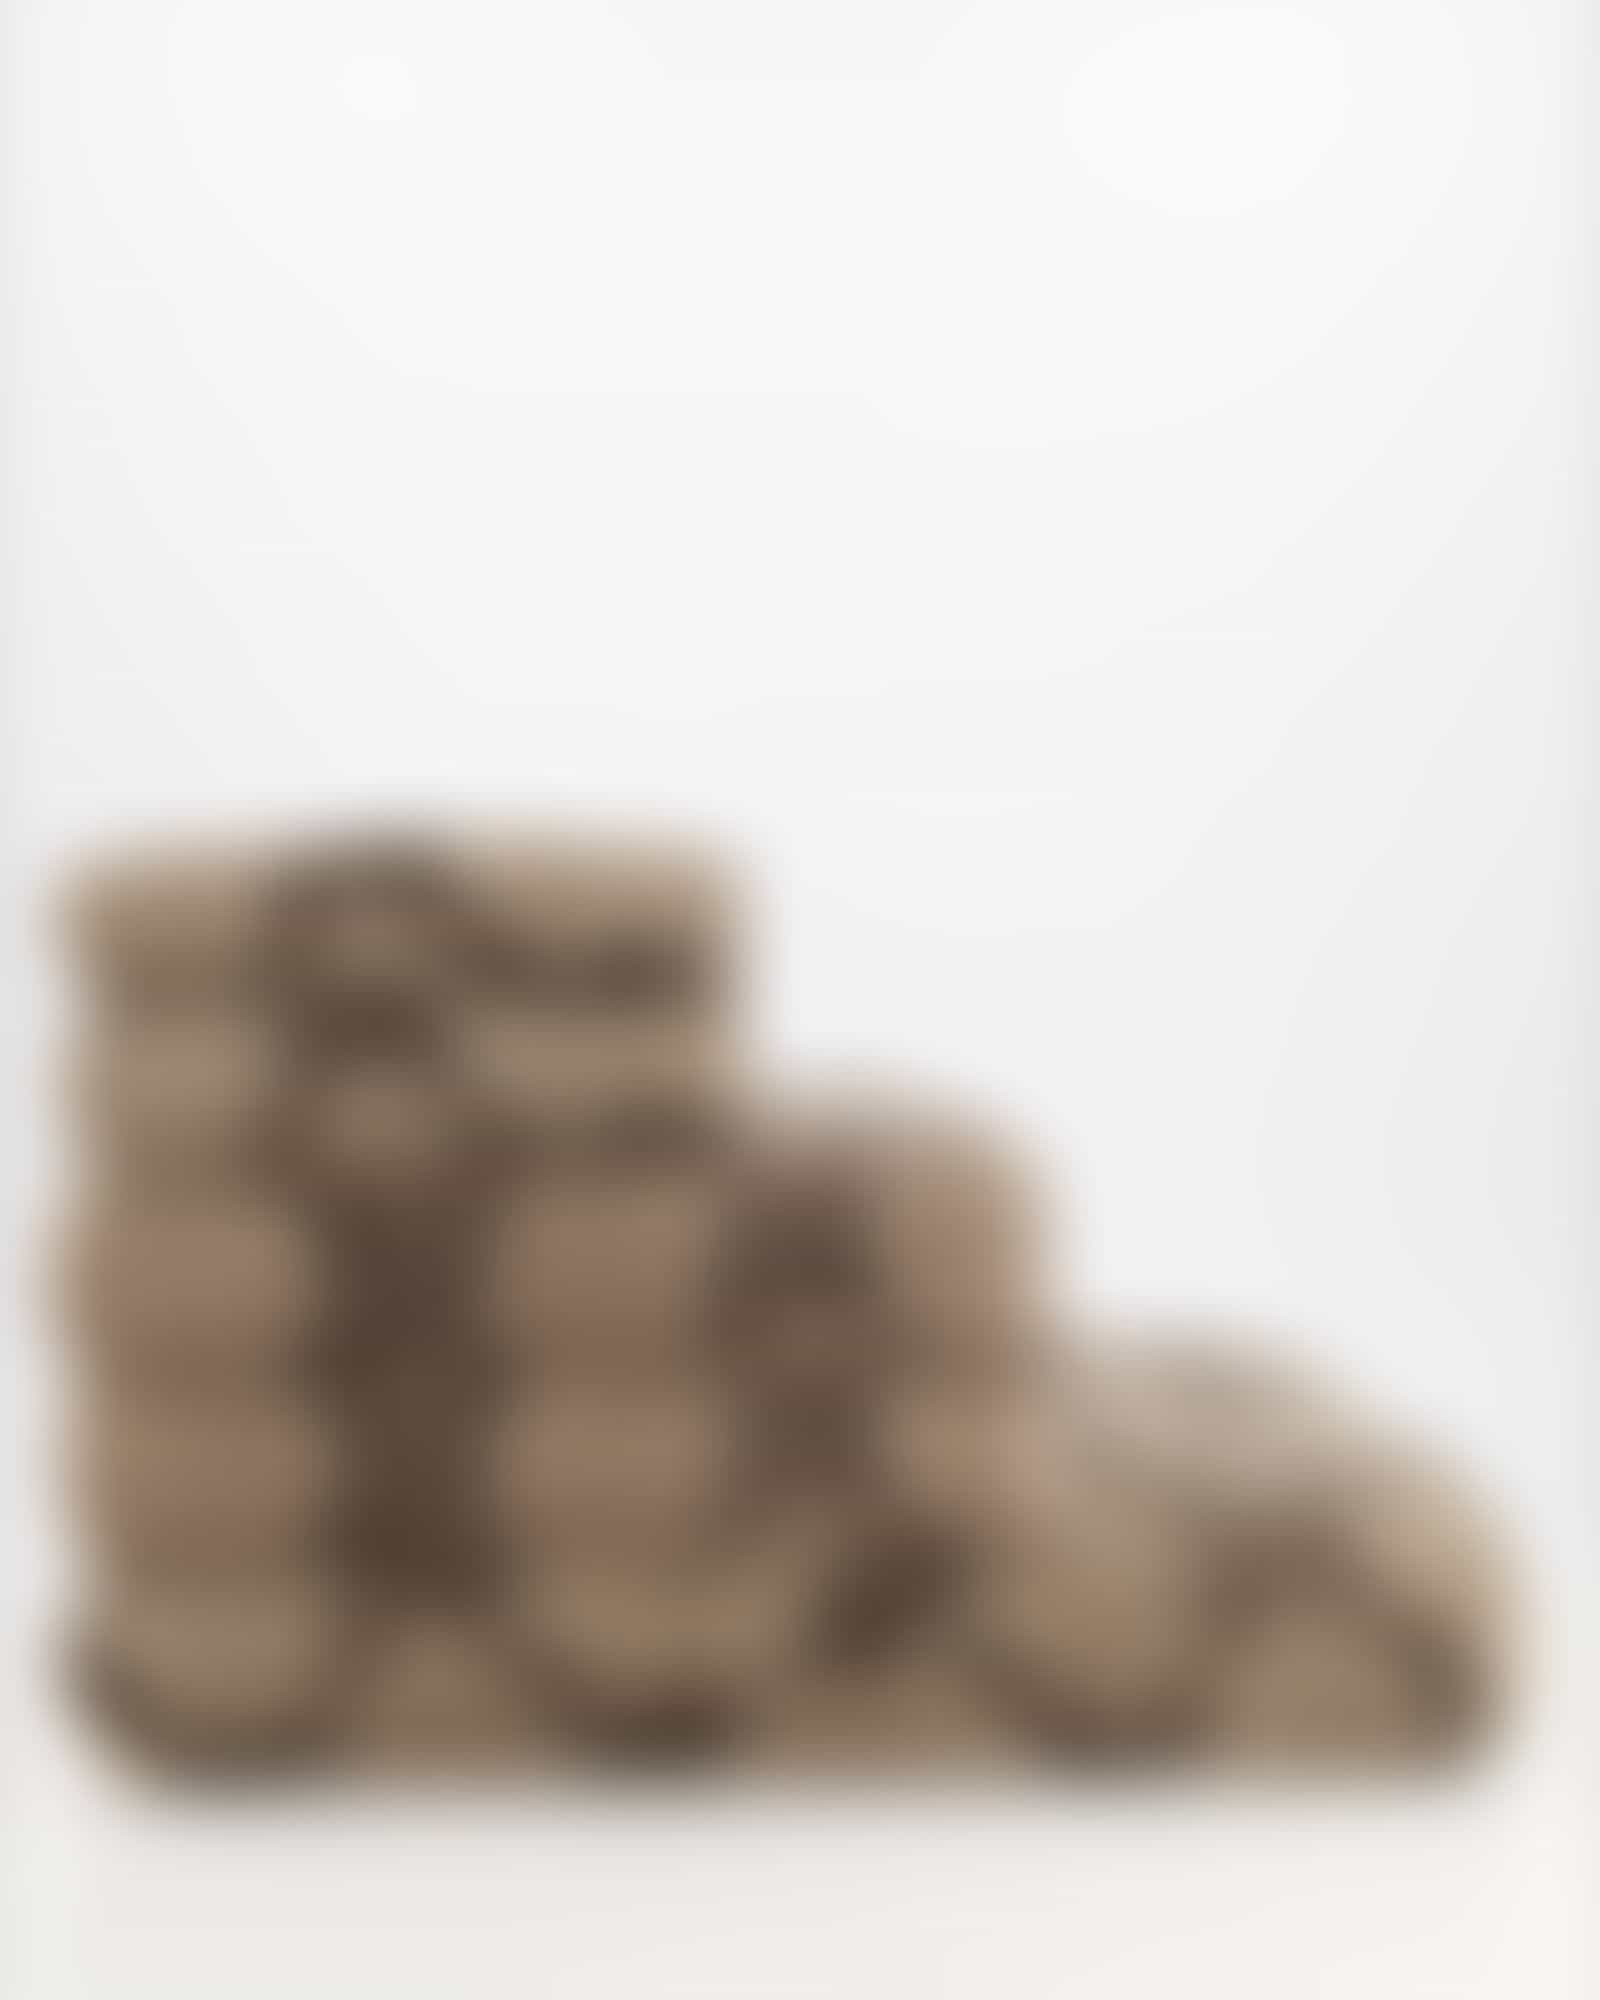 JOOP! Handtücher Classic Cornflower 1611 - Farbe: mocca - 39 - Duschtuch 80x150 cm